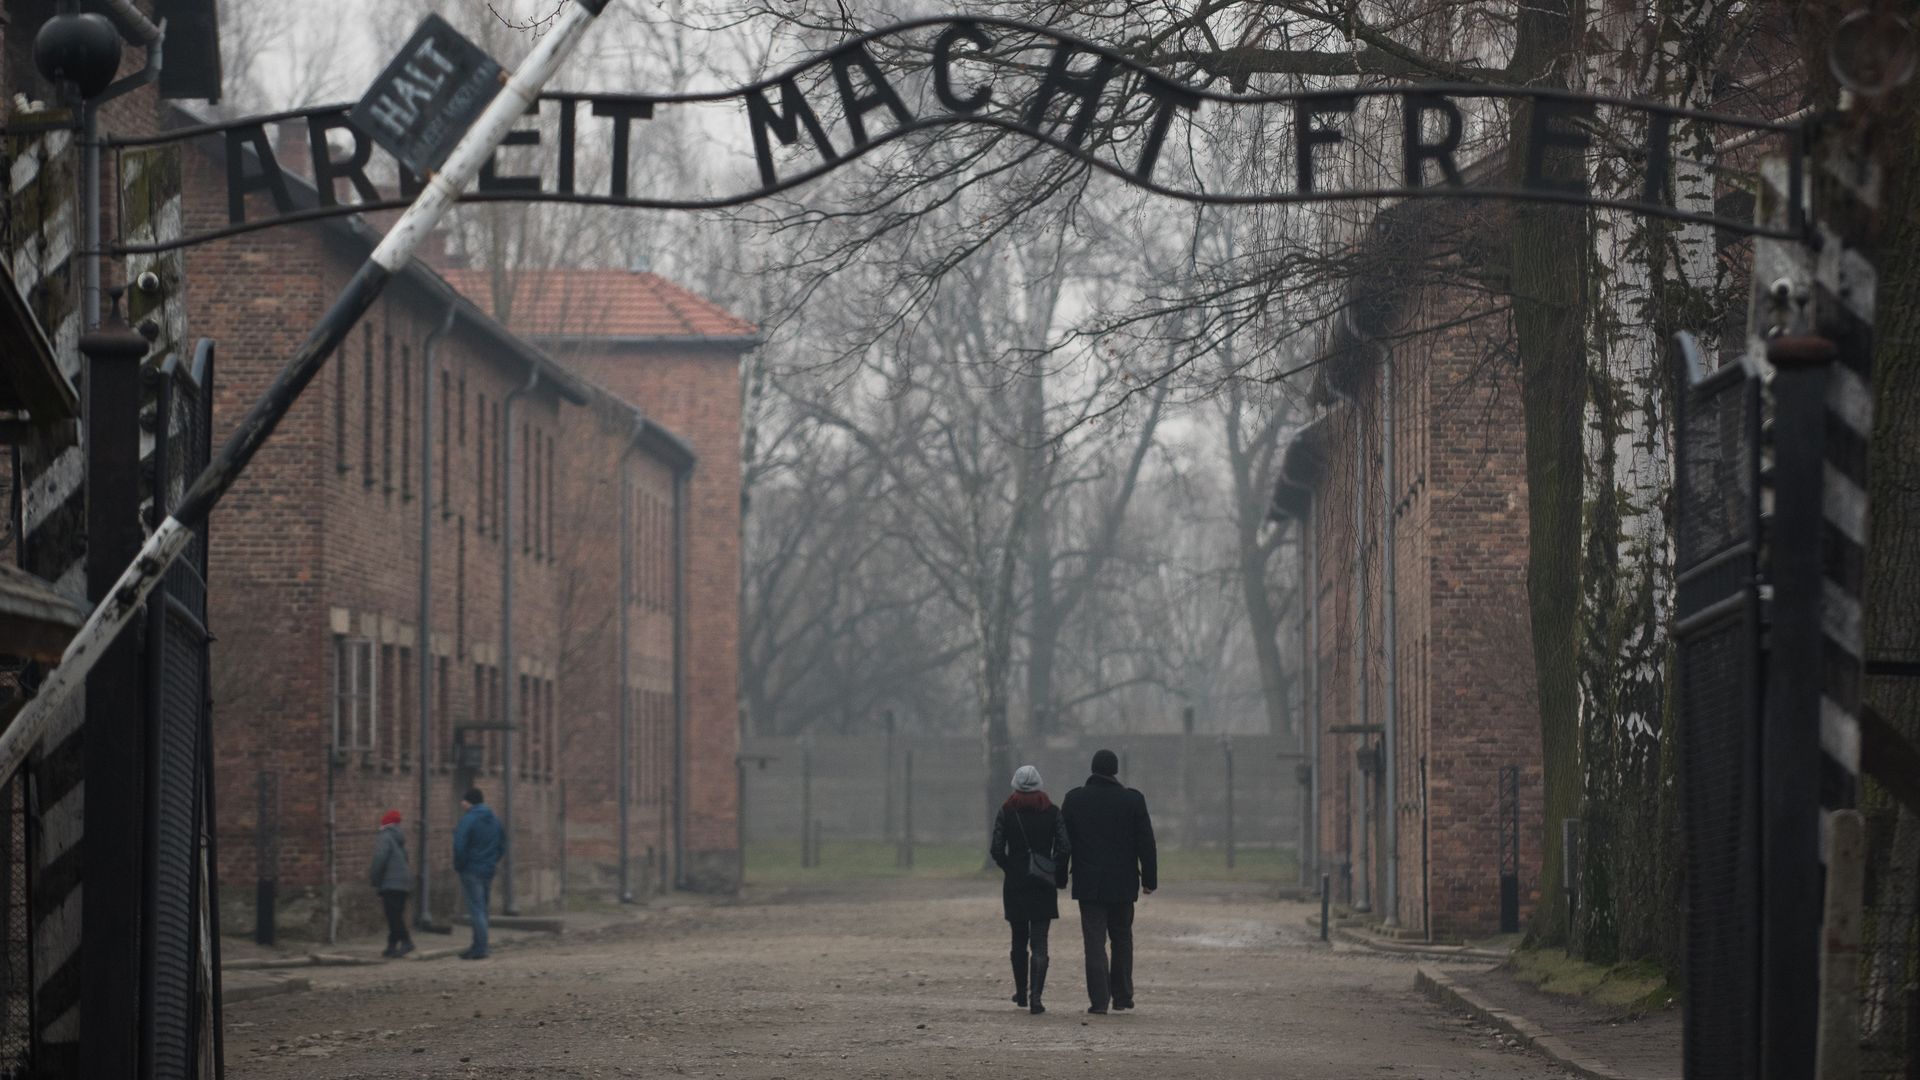  The Auschwitz main gate.